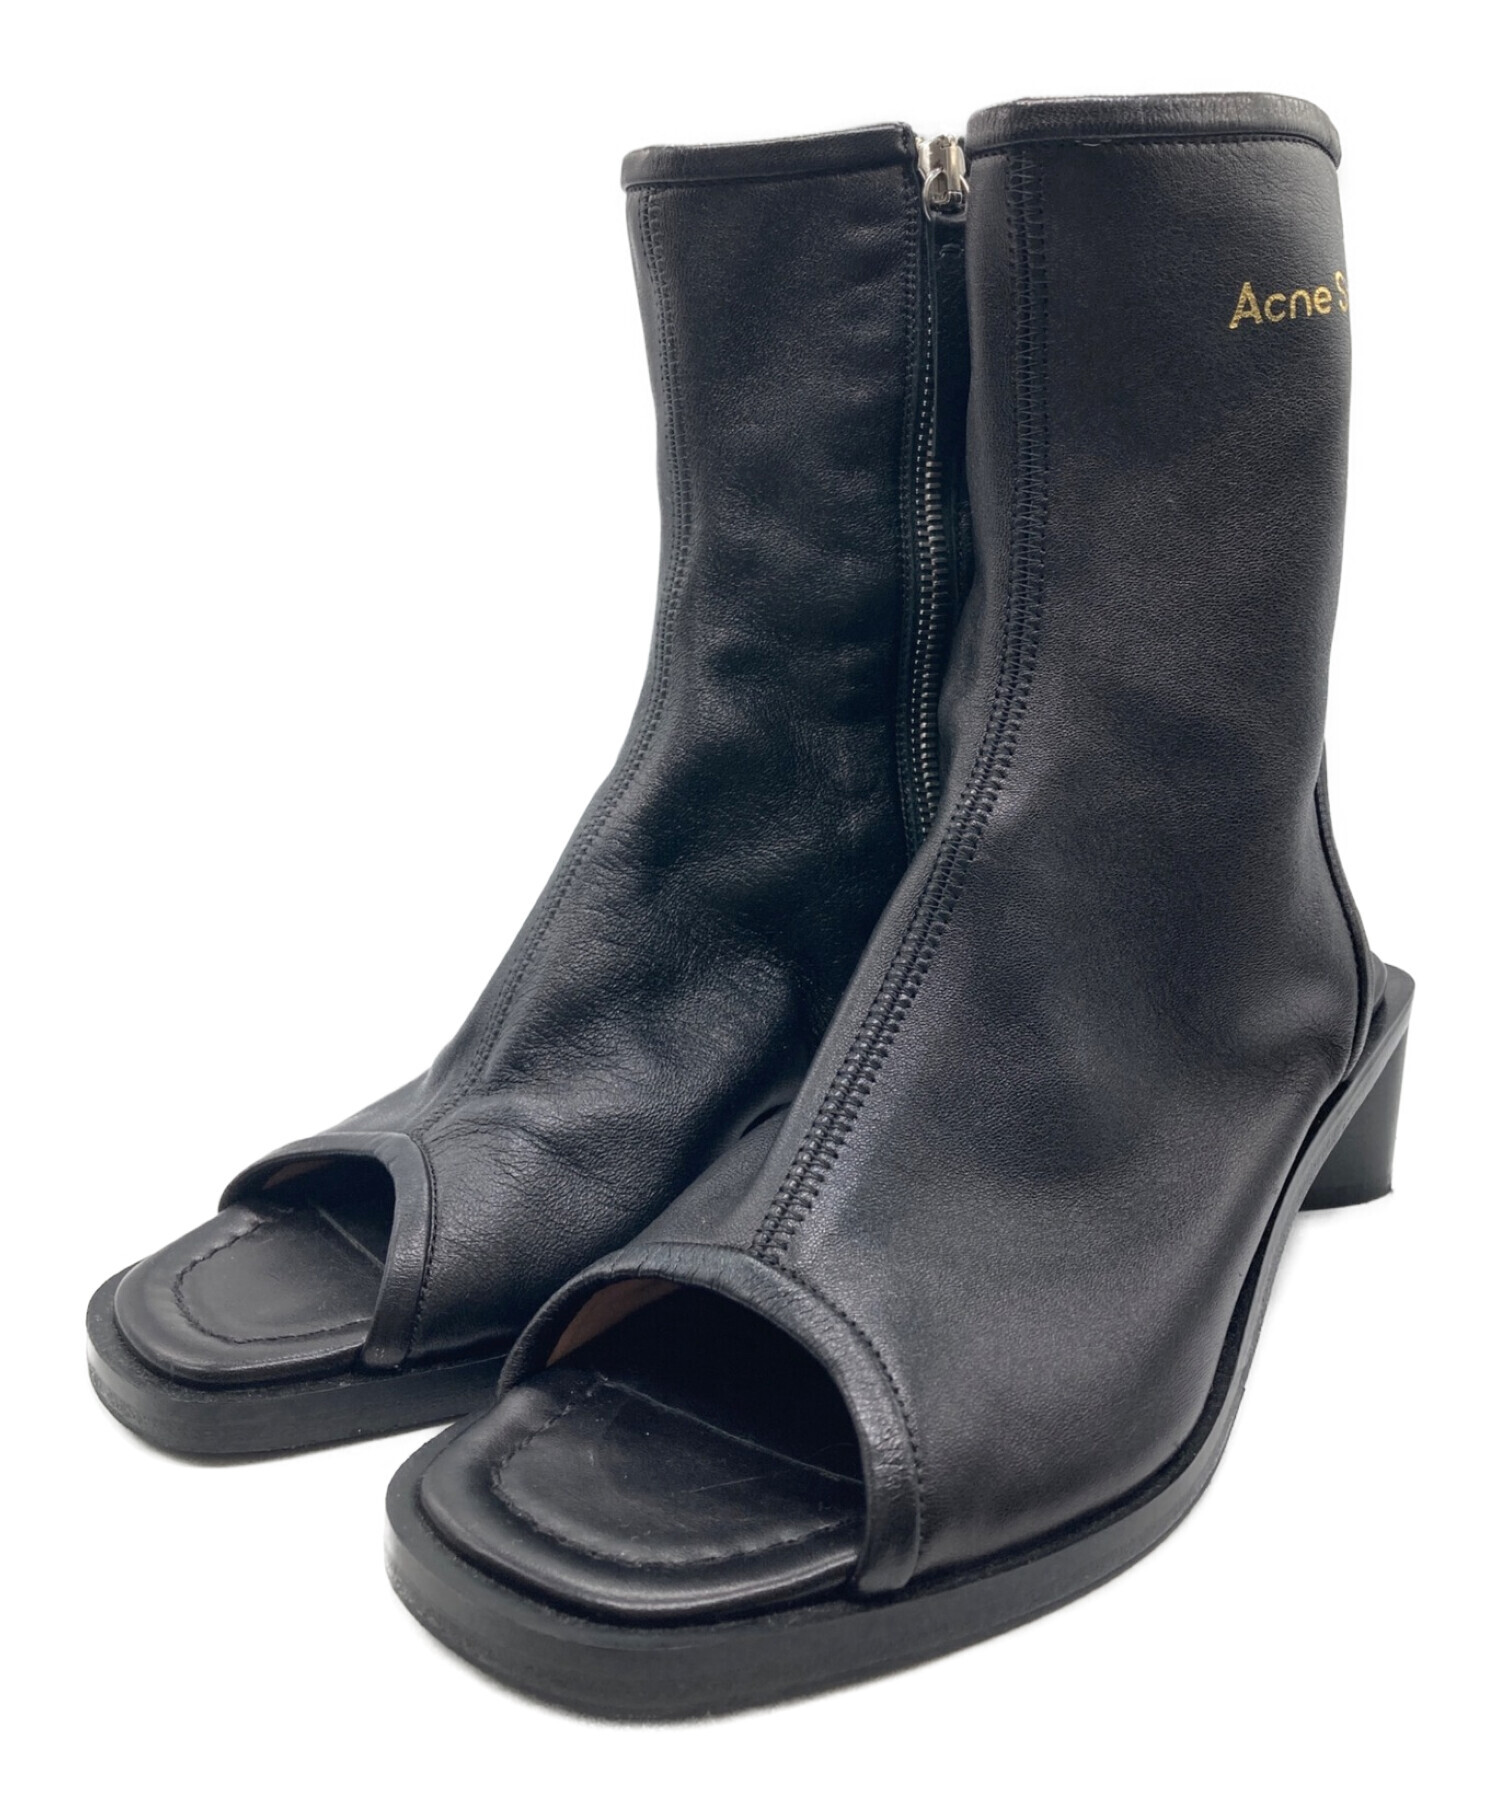 Acne Studios サンダル 黒 サイズ36 - 靴